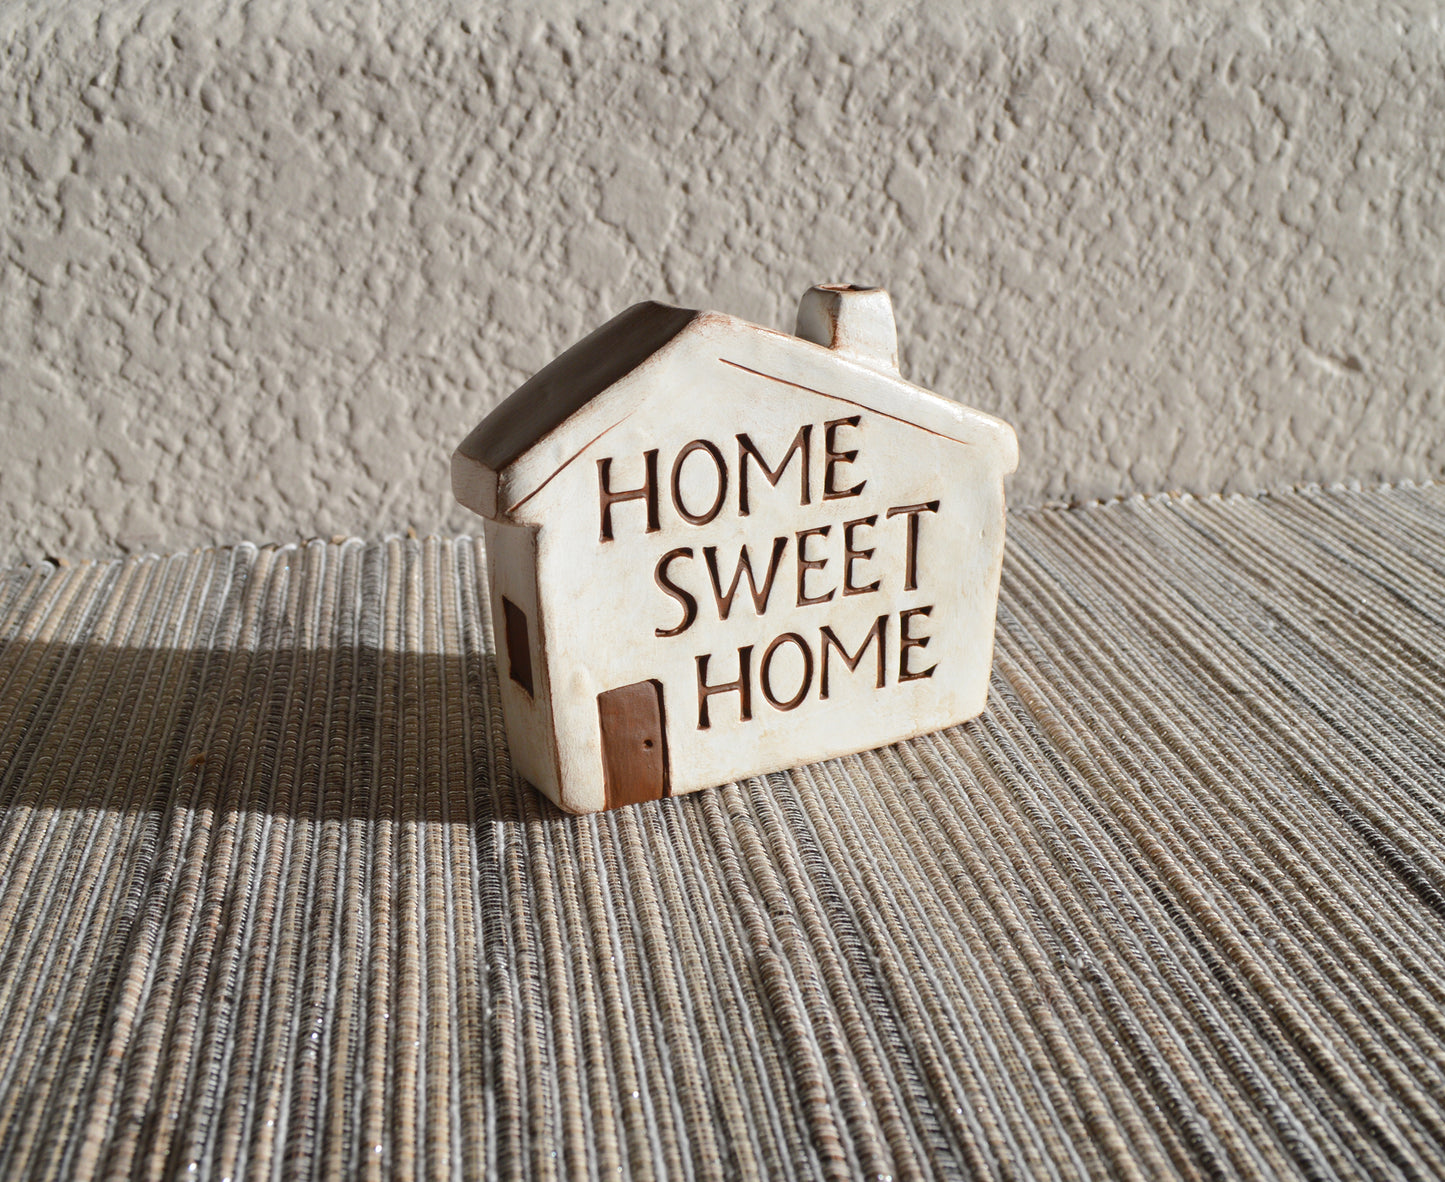 Home Sweet Home - Single House